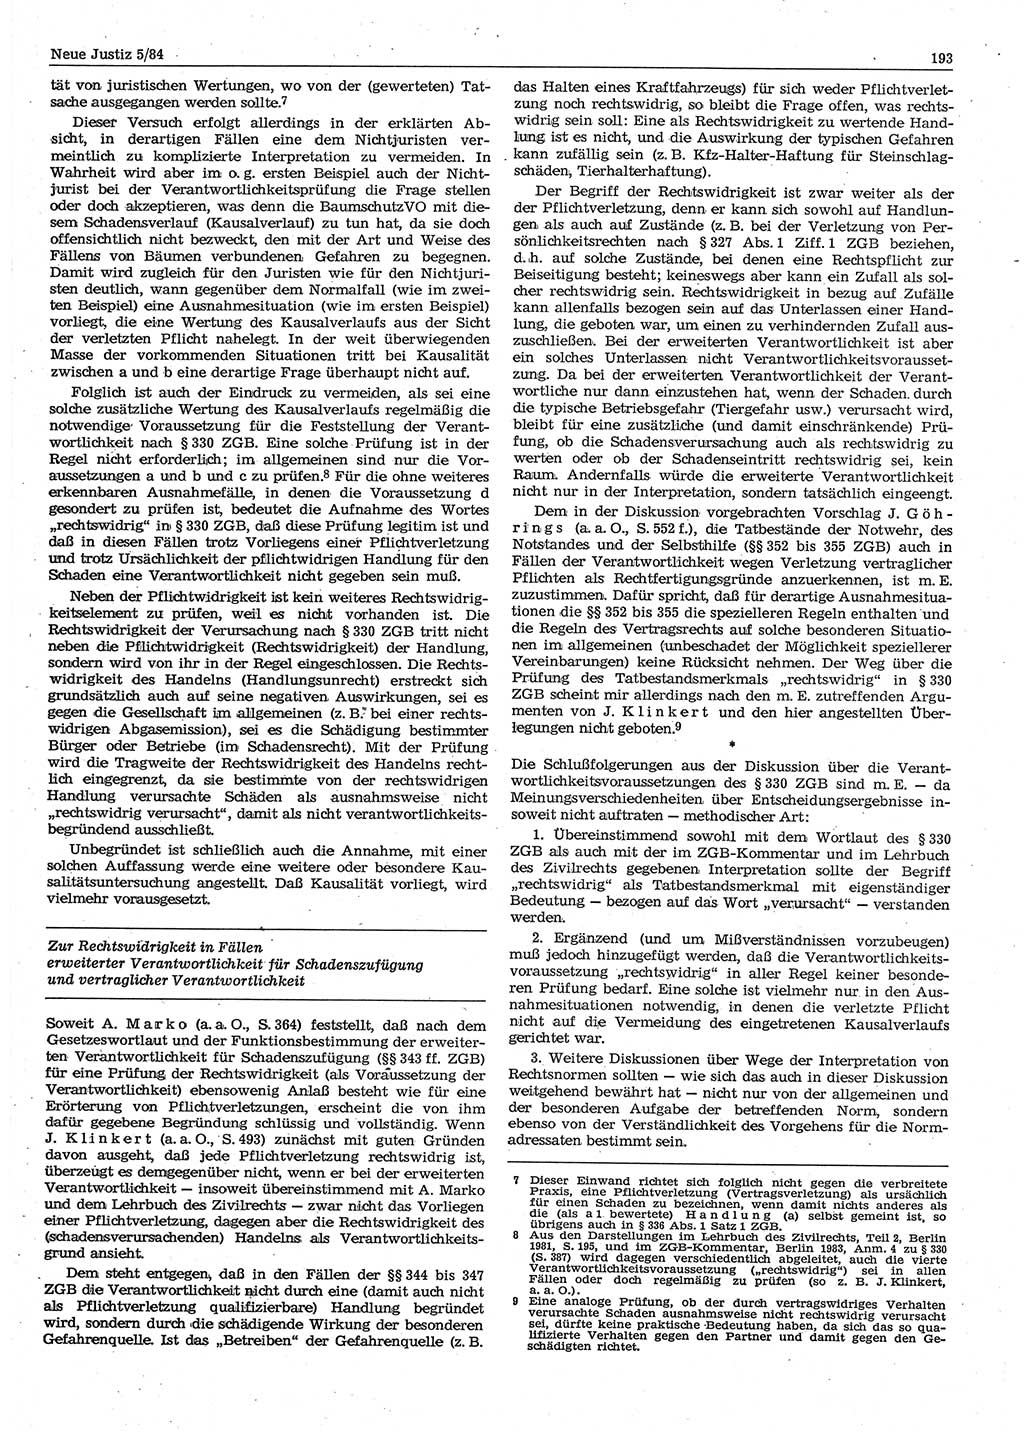 Neue Justiz (NJ), Zeitschrift für sozialistisches Recht und Gesetzlichkeit [Deutsche Demokratische Republik (DDR)], 38. Jahrgang 1984, Seite 193 (NJ DDR 1984, S. 193)